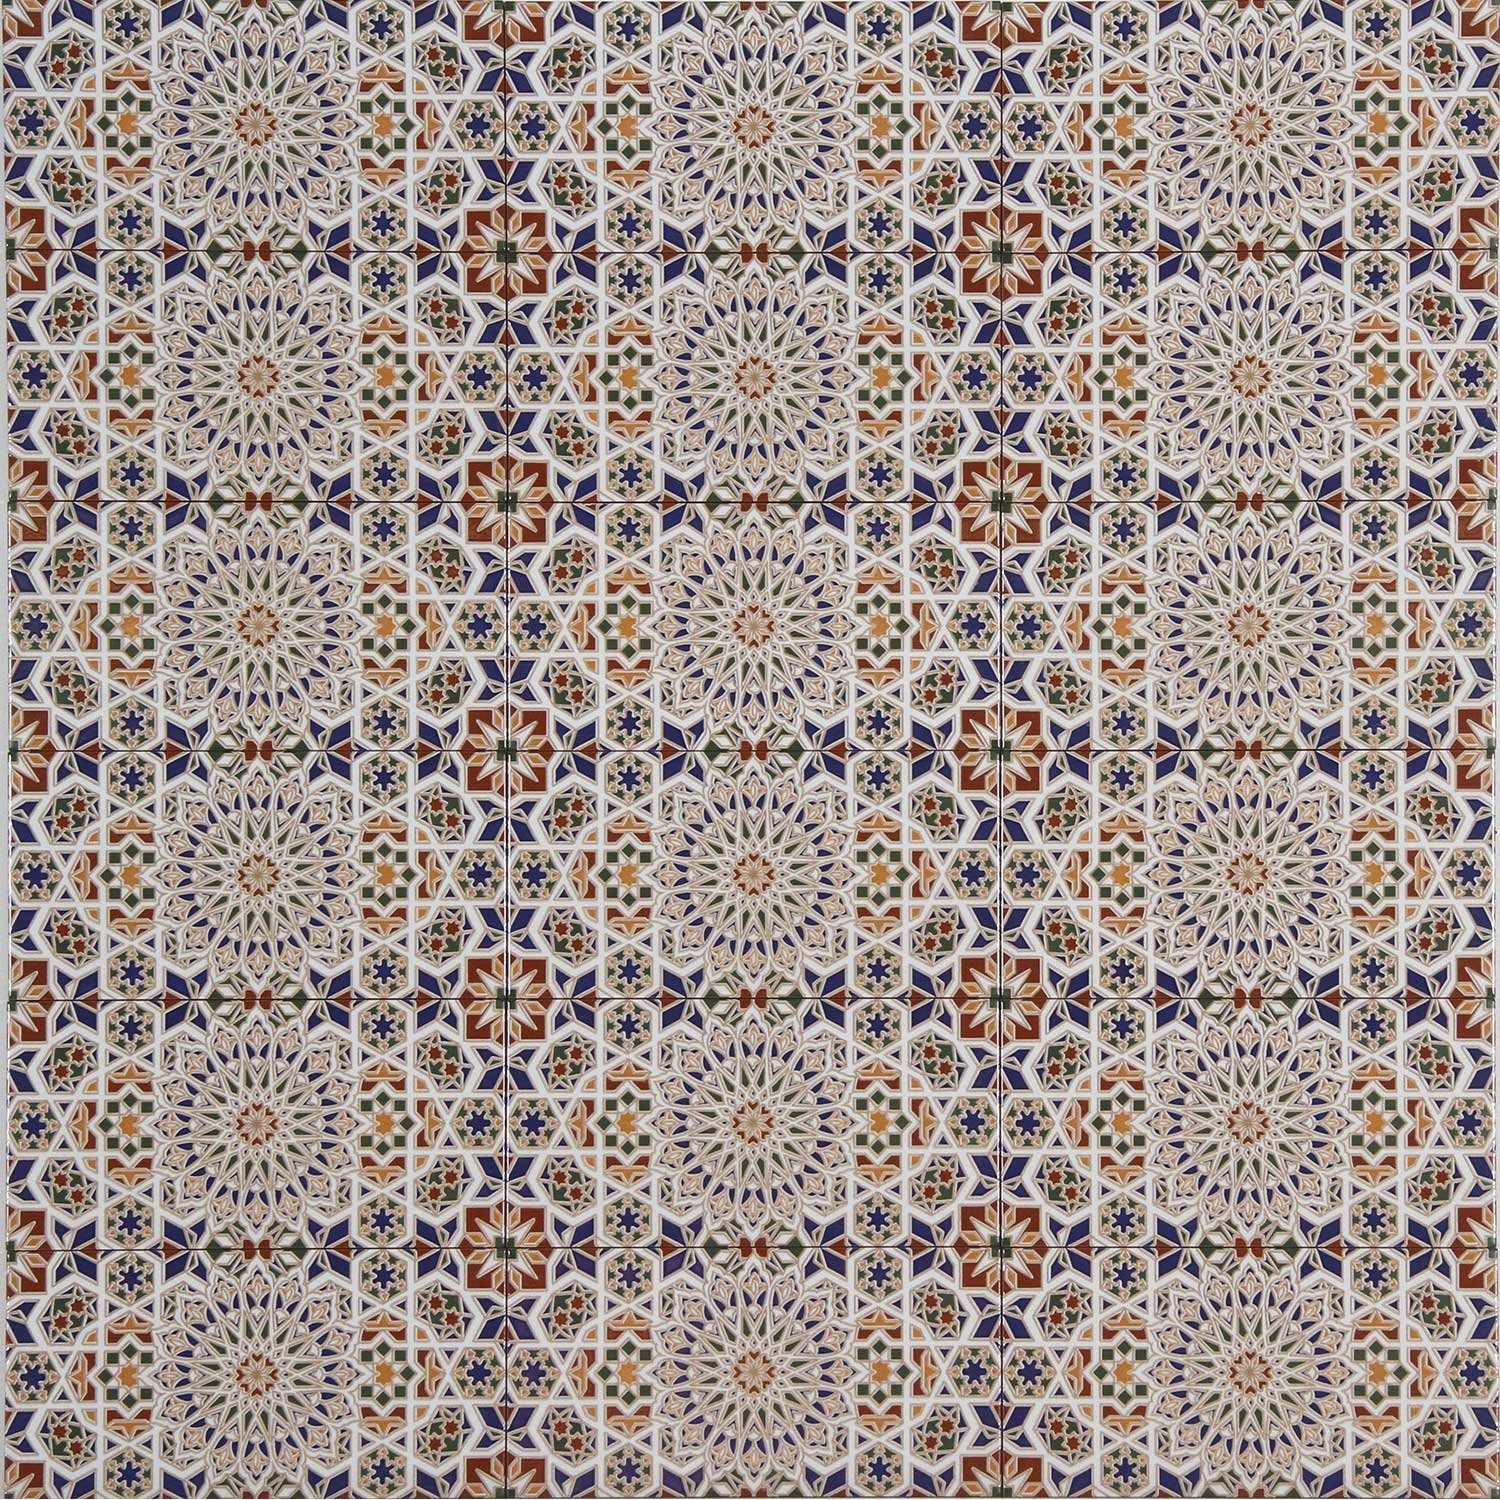 Casa Moro Steinzeug Wandfliese Marokkanische Fliesen Rabab 30x15 cm Wandfliesen, bunt, mit endlos Muster, für schöne Küche Badezimmer, Orientalische Keramikfliesen FL2090